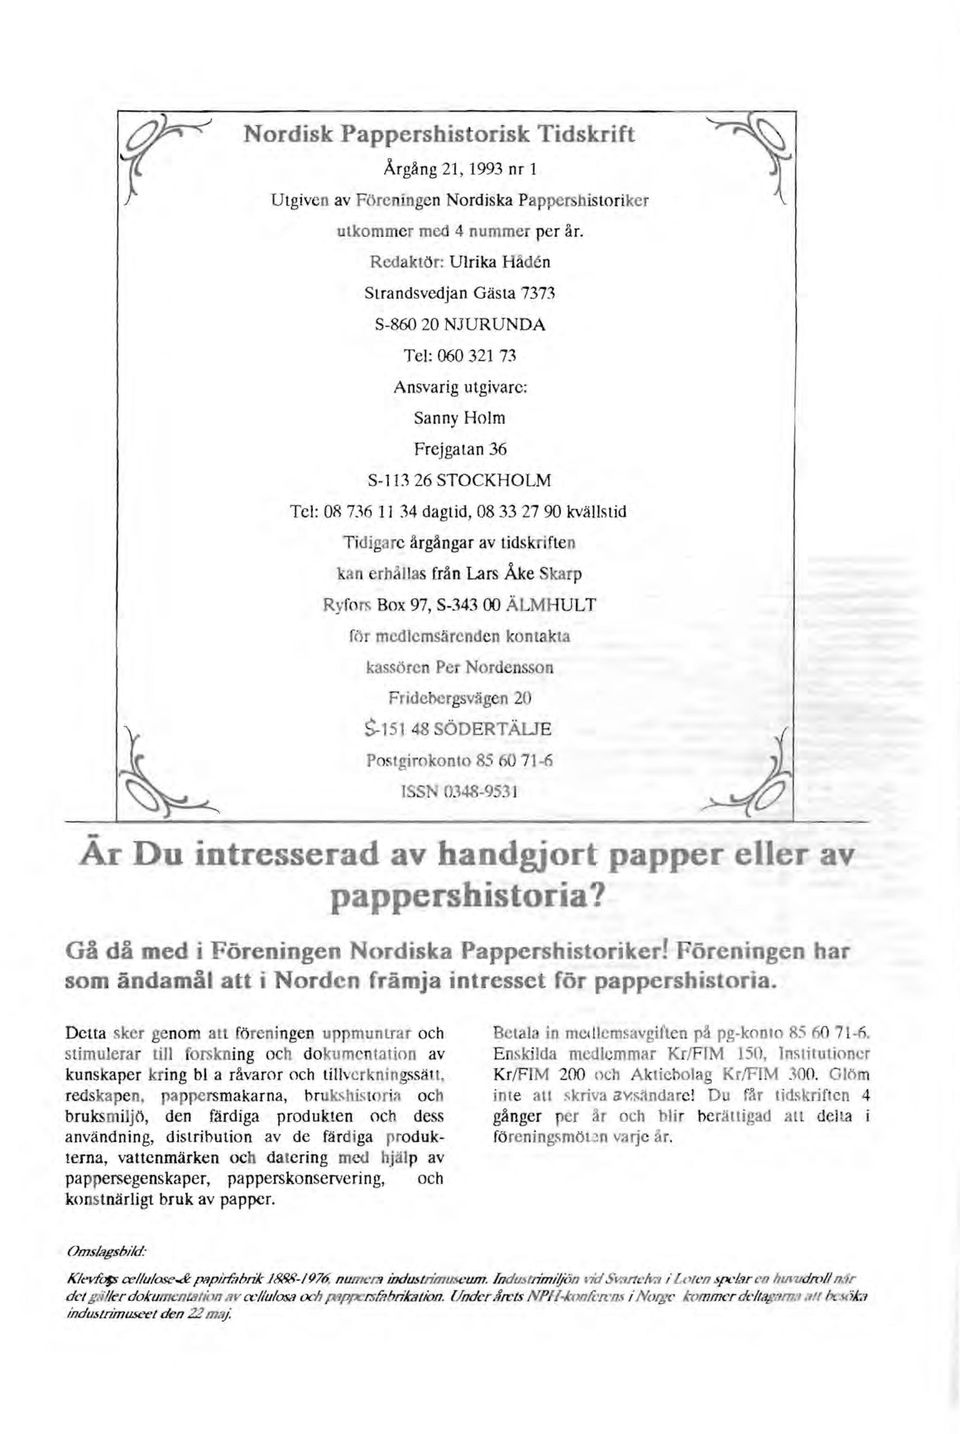 Tidigare årgångar av tidskrifte n ka n erhållas från Lars Åke Skarp Ryfo rs Box 97, S-343 00 ÄLMHULT för mcdlemsärcnden kontakta kassören Per Nordensson F rideoorgsvägen 20 ~15t 48 SÖDERTÄLJE